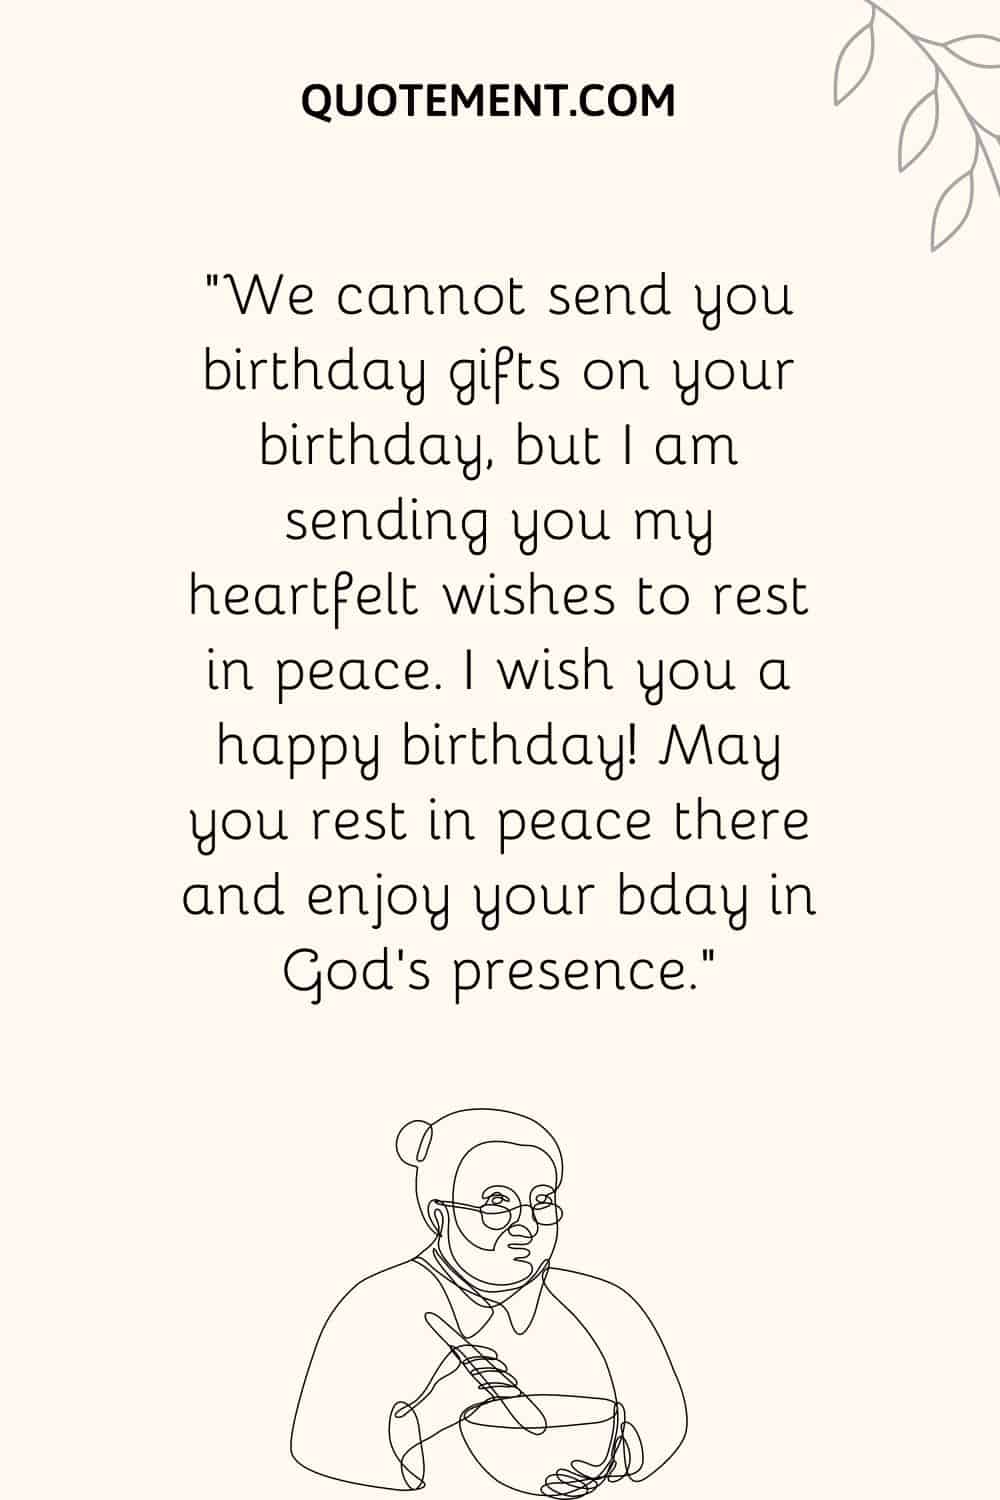 "No podemos enviarle regalos de cumpleaños el día de su cumpleaños, pero le envío mis más sinceros deseos de que descanse en paz.